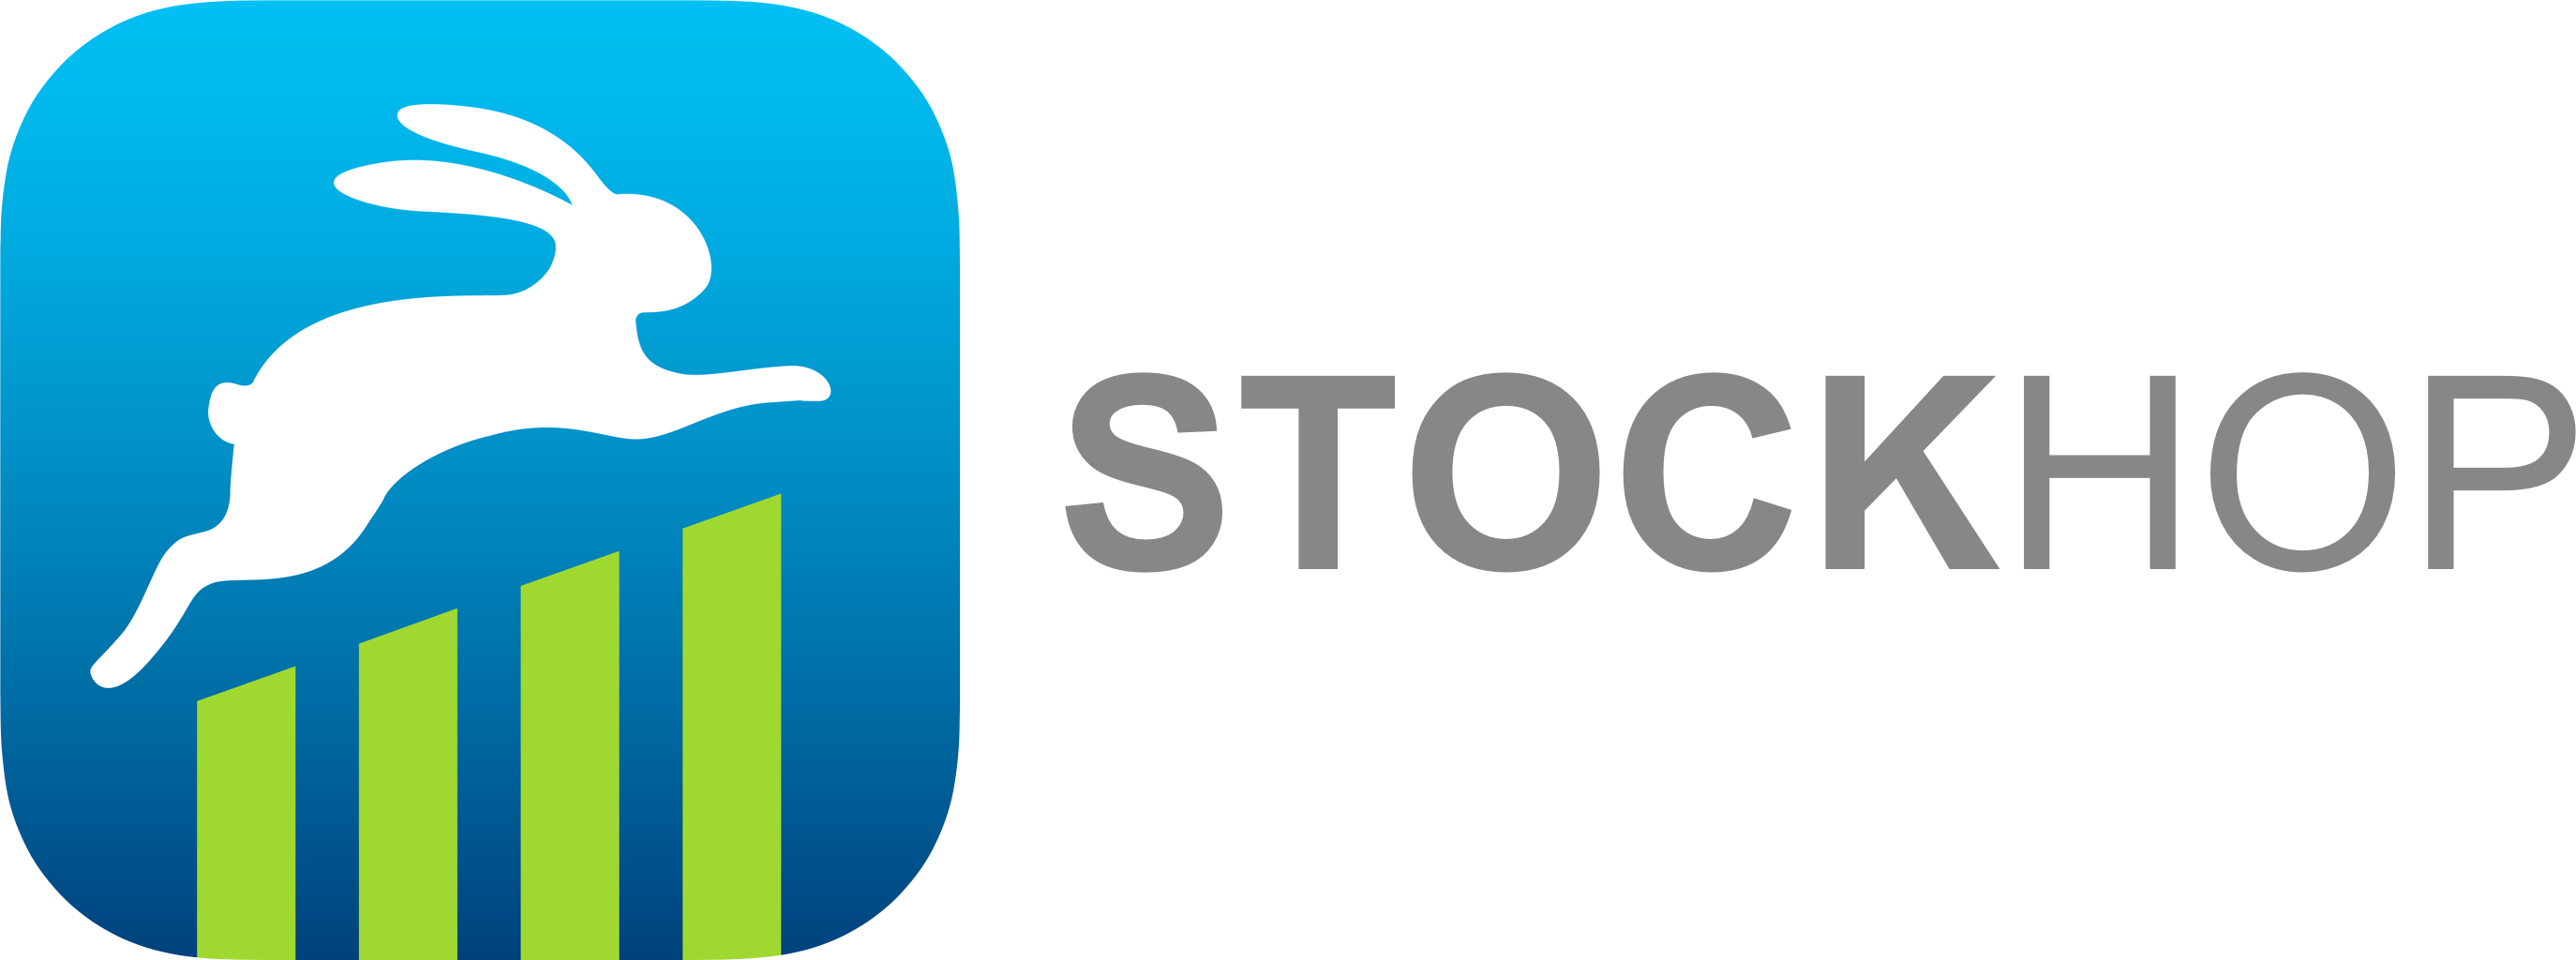 StockHop